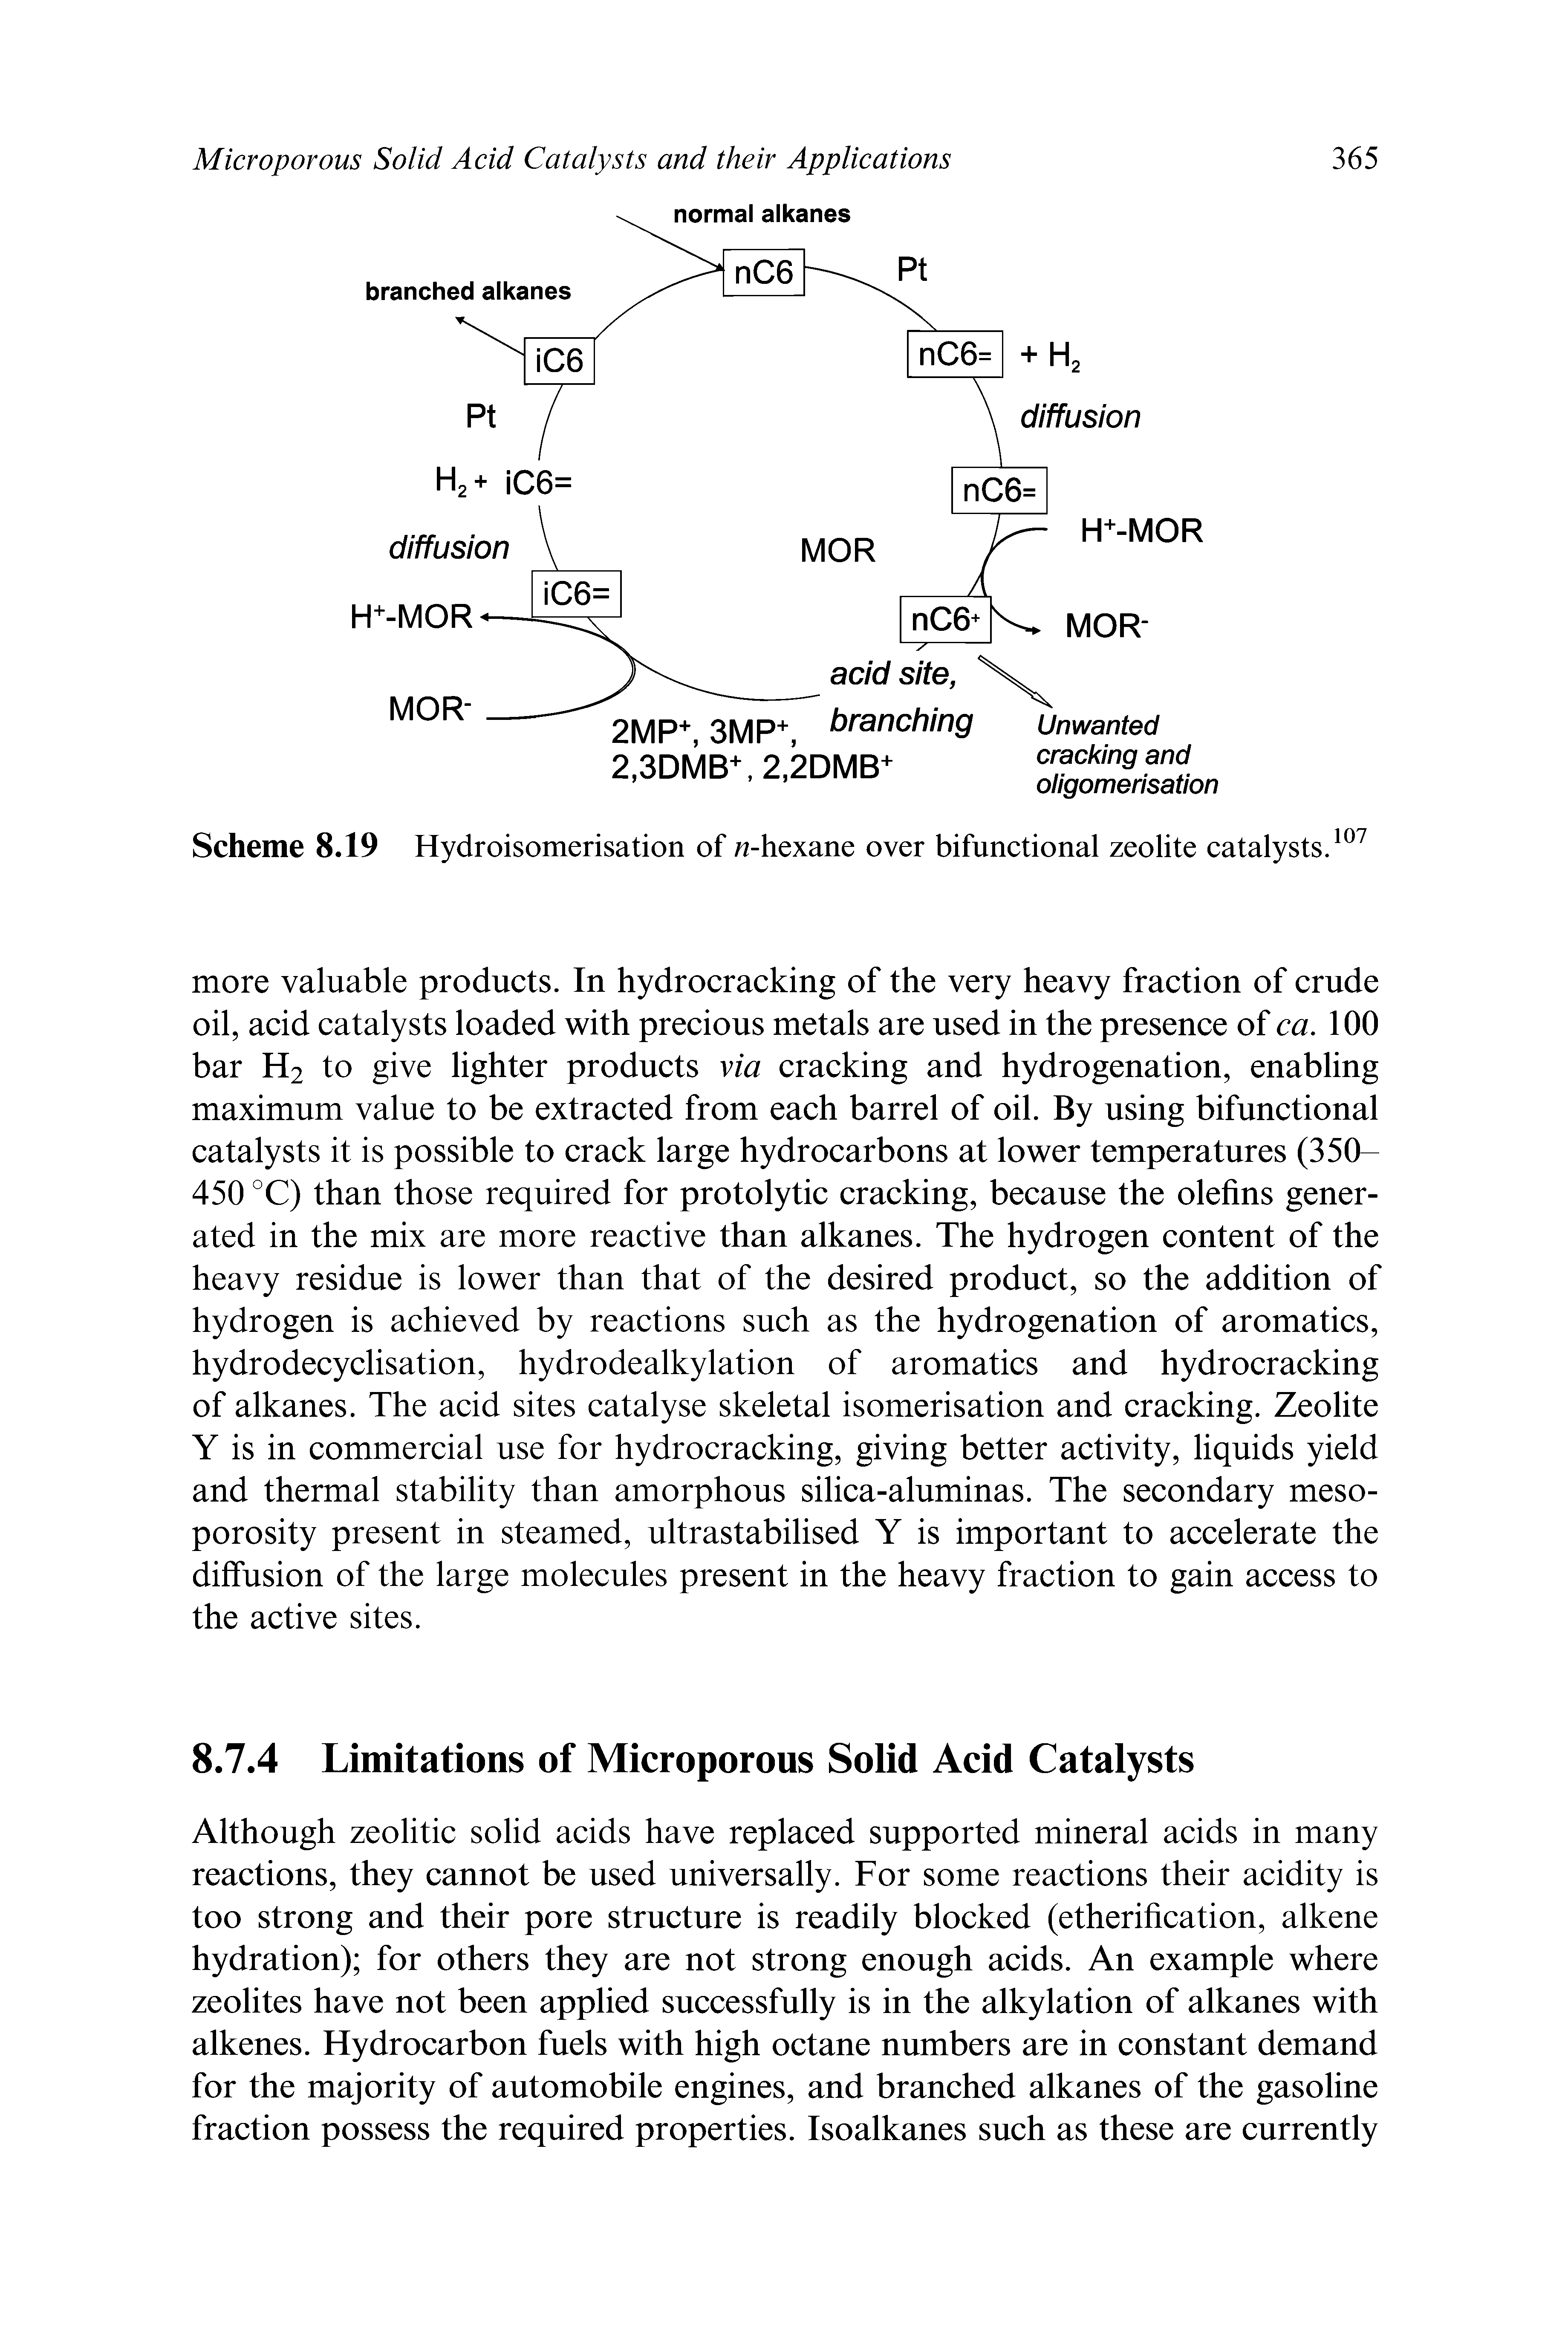 Scheme 8.19 Hydroisomerisation of w-hexane over bifunctional zeolite catalysts.